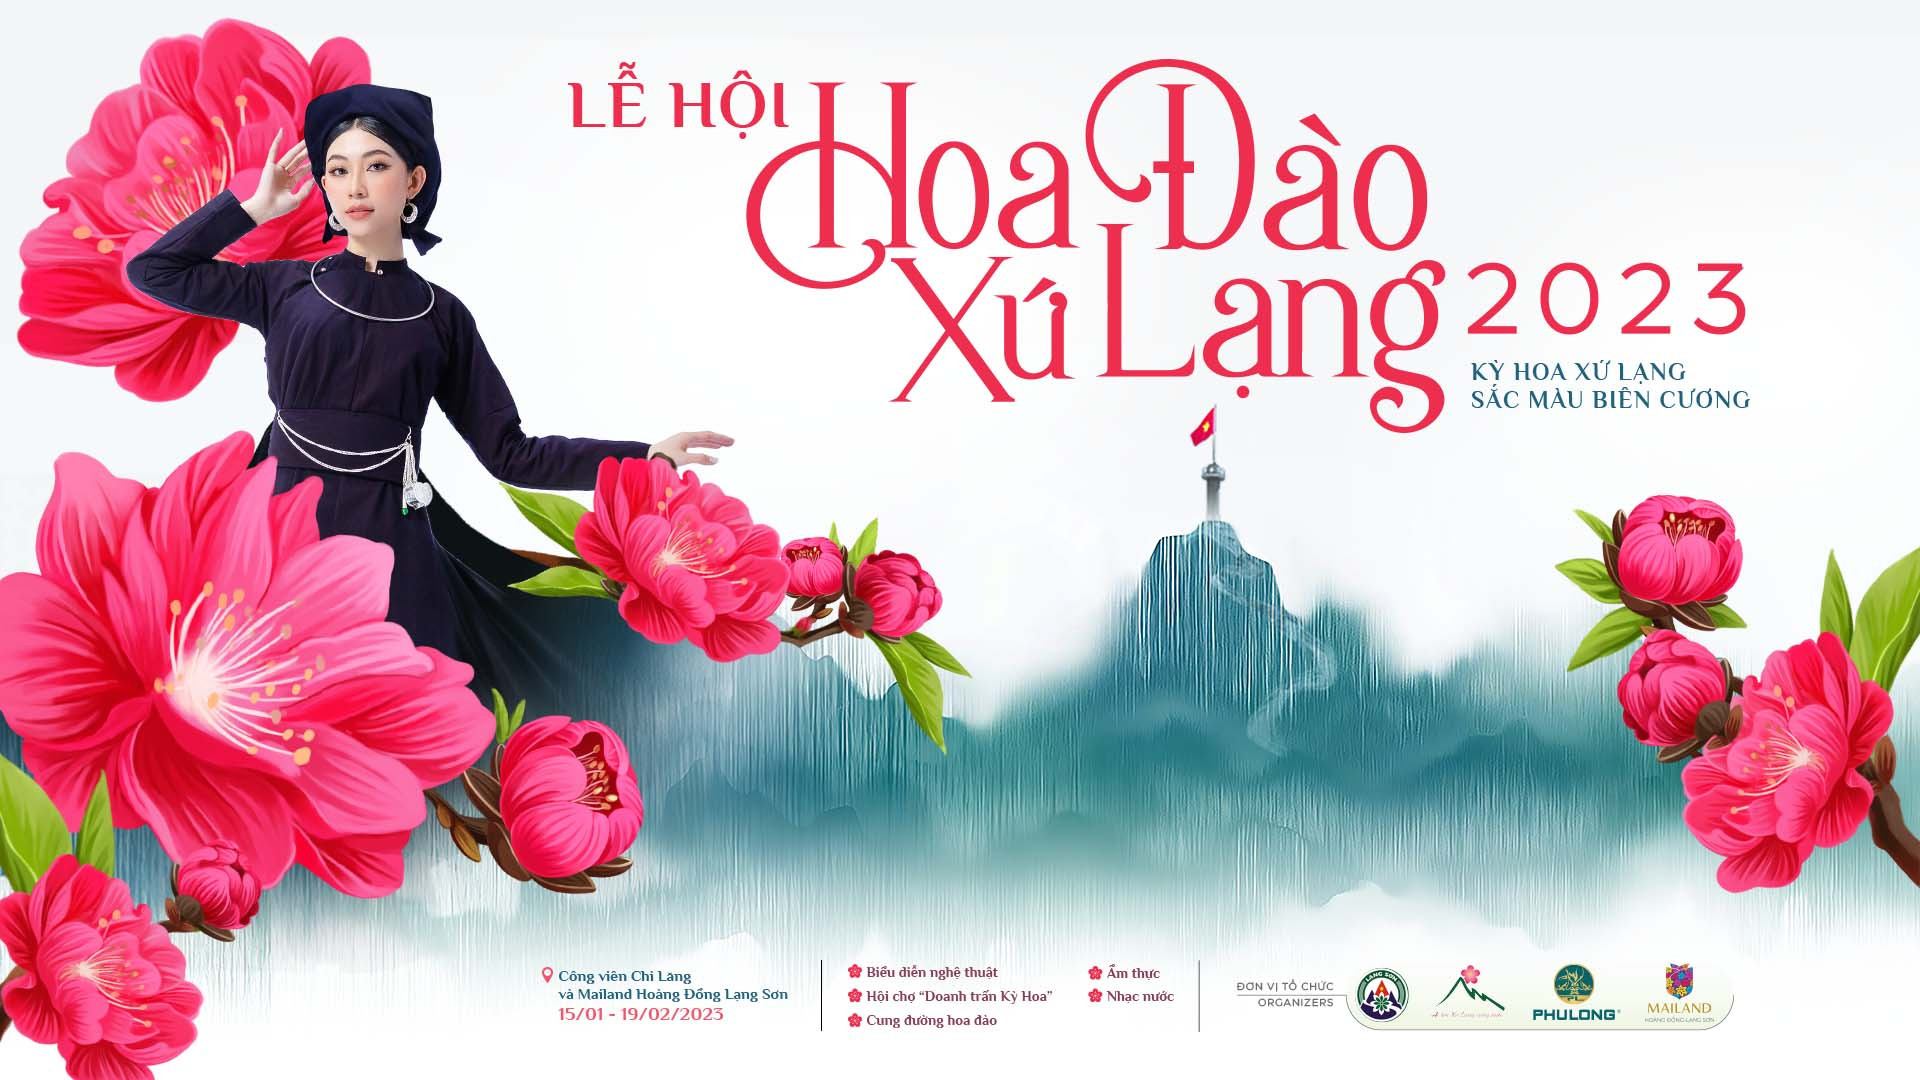 Lễ hội Hoa Đào Lạng Sơn là một trong những lễ hội mang đậm nét văn hóa, tình yêu thiên nhiên của con người. Với hàng triệu hoa đào nở rộ, lễ hội hứa hẹn sẽ mang đến cho bạn một trải nghiệm vô cùng đặc biệt.